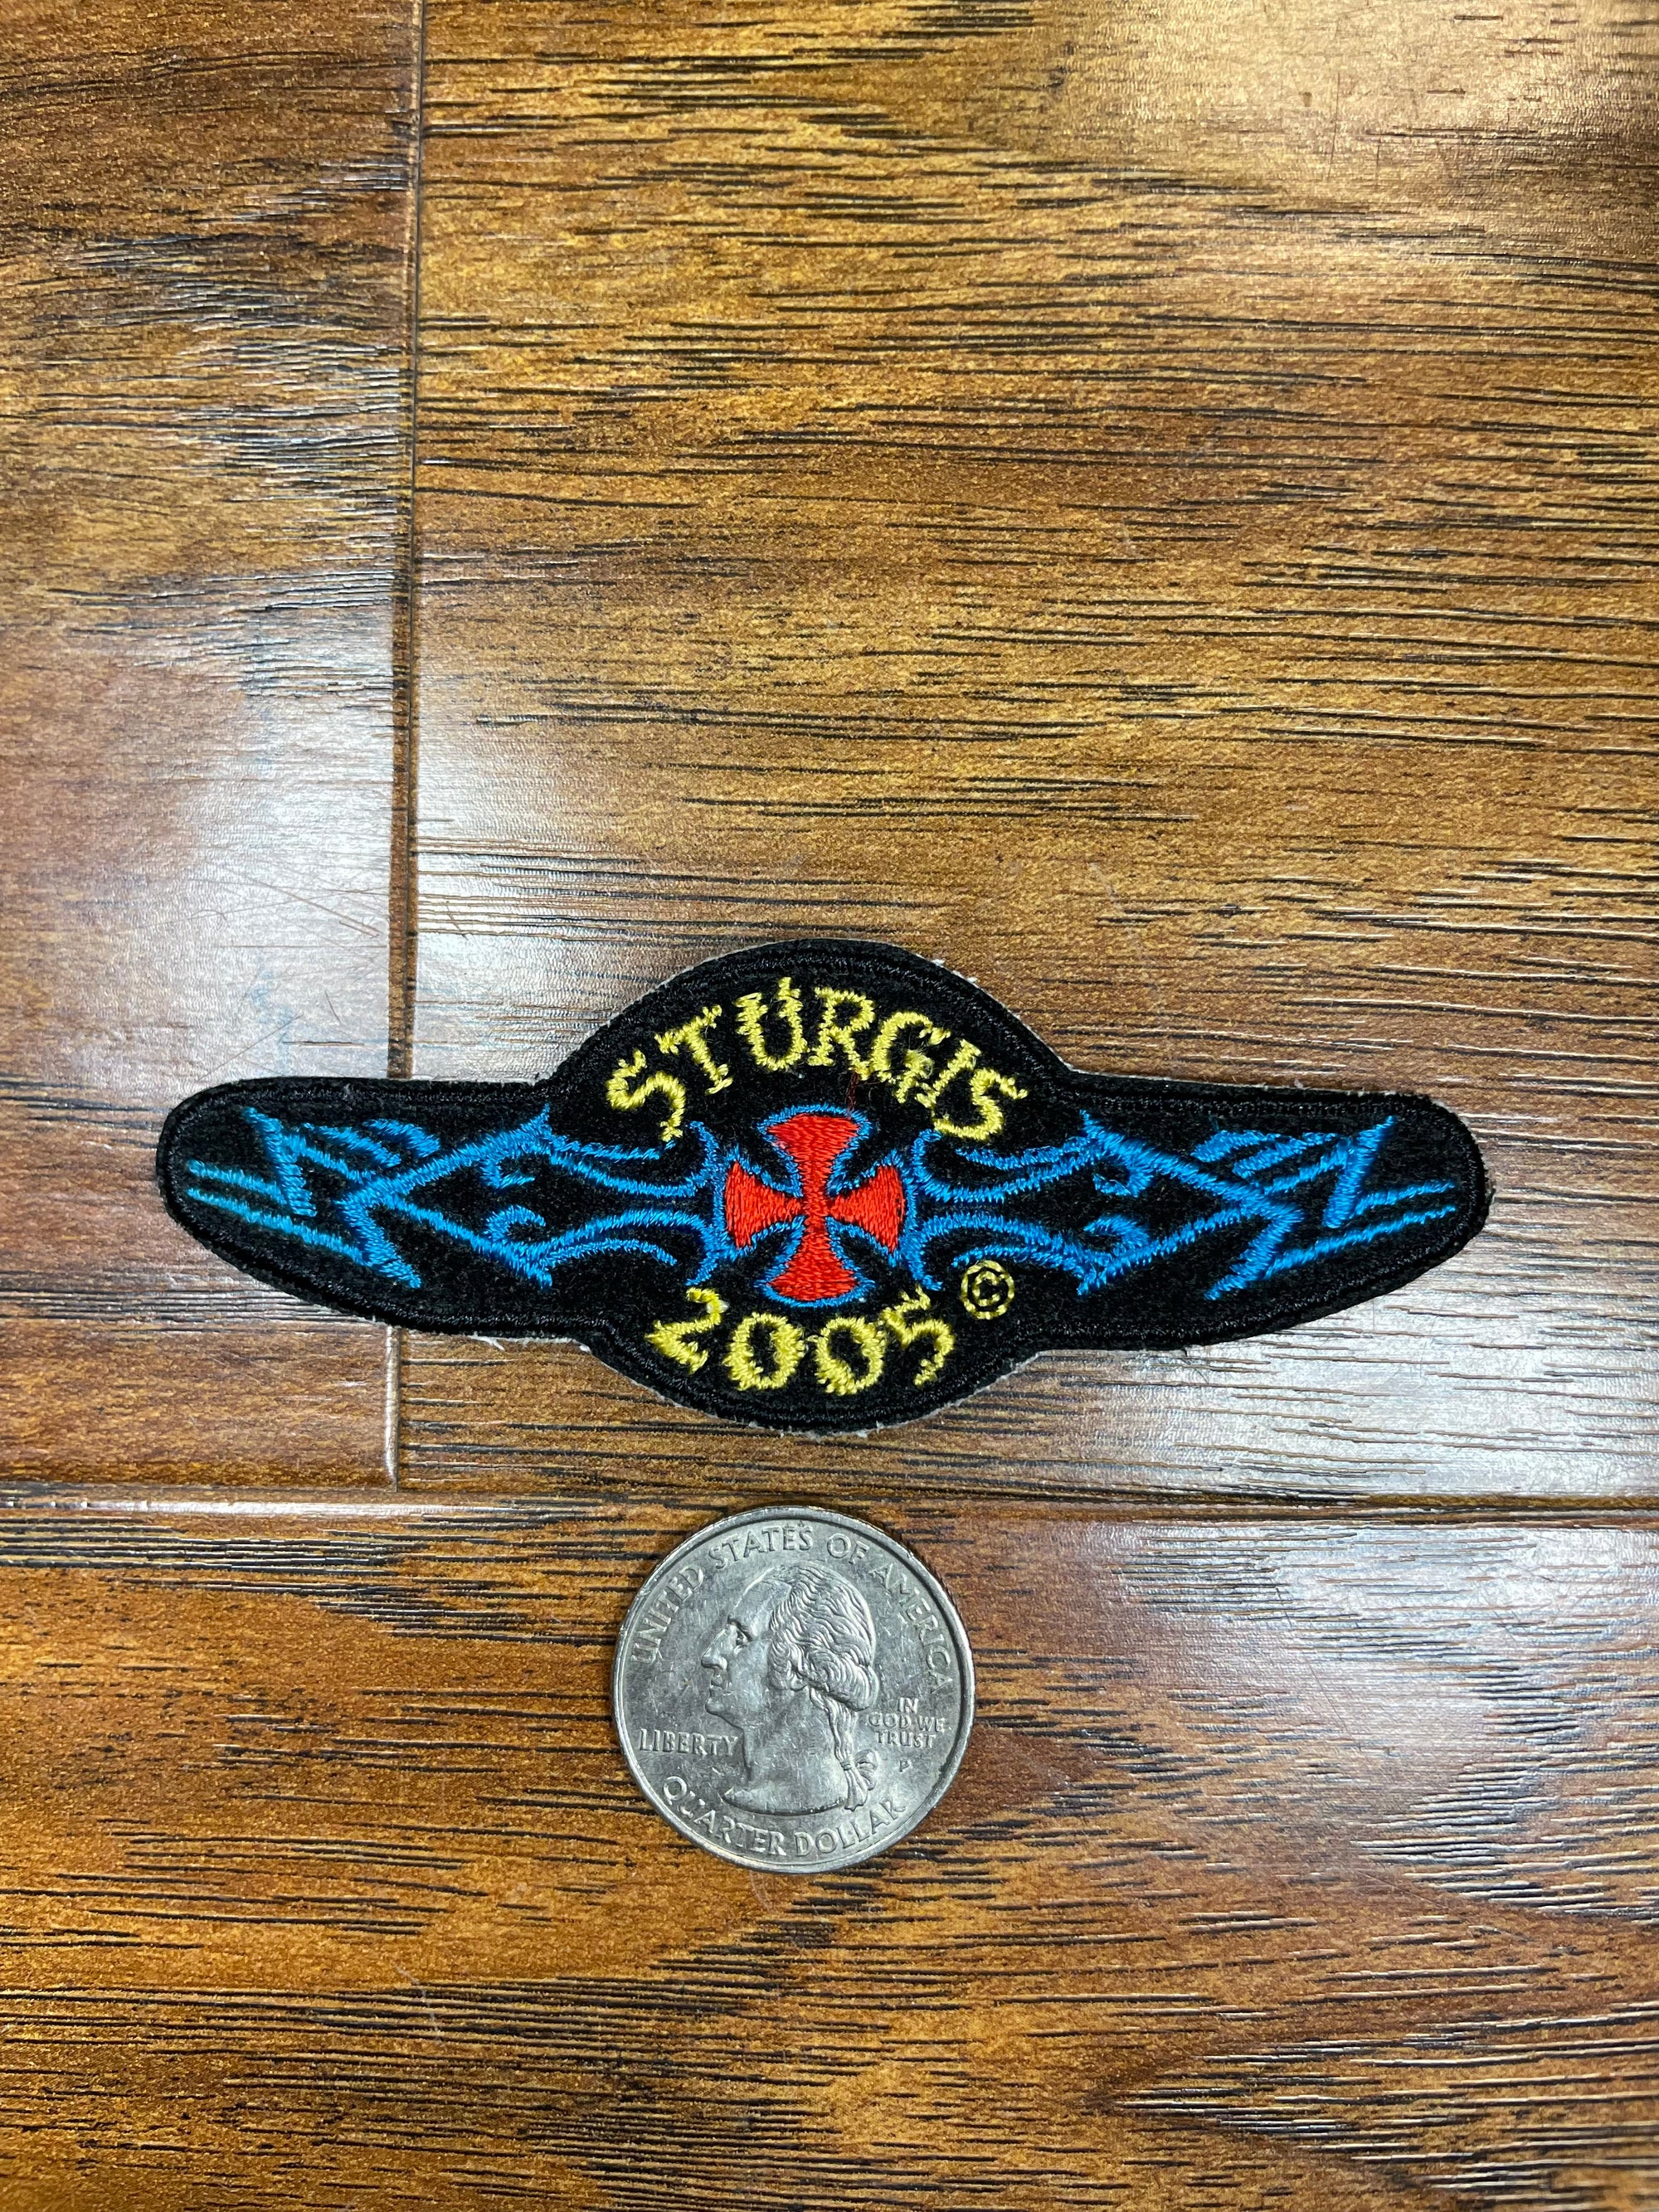 Vintage Sturgis 2005